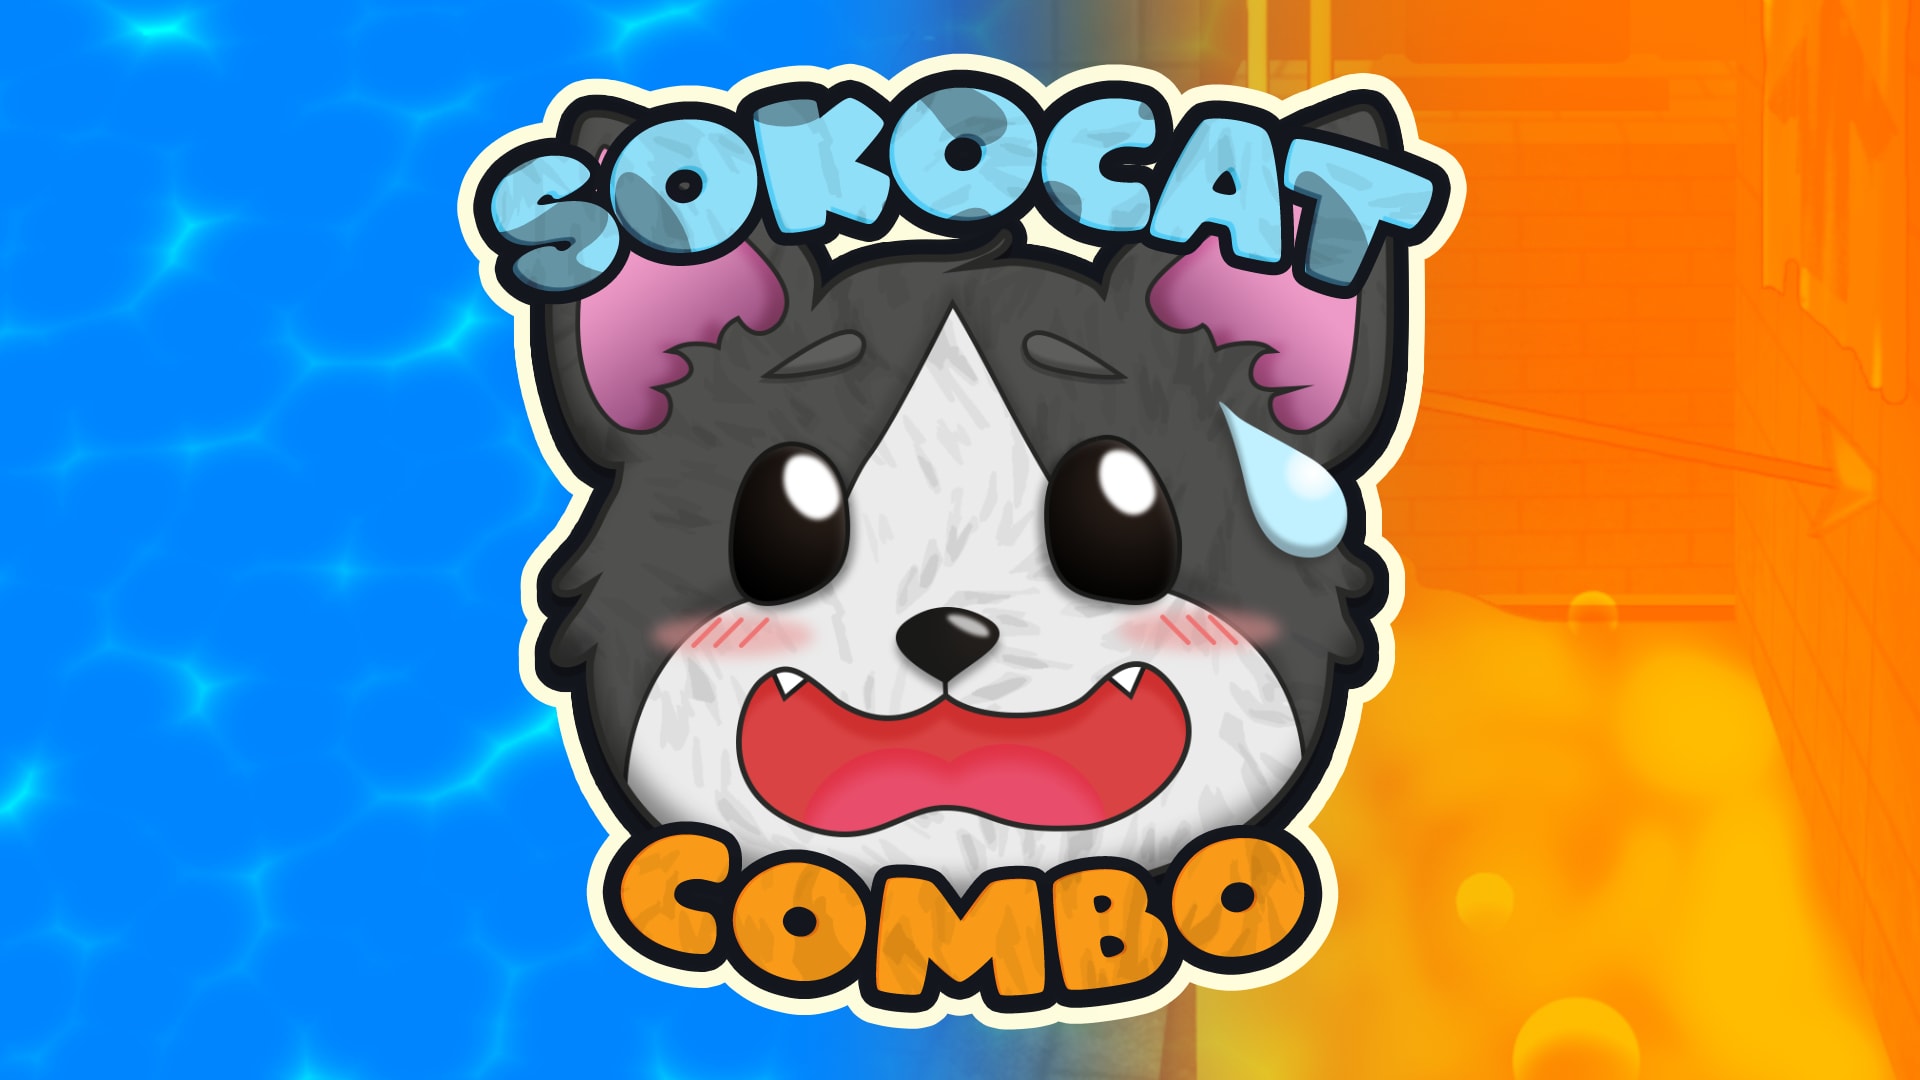 Sokocat - Combo 1